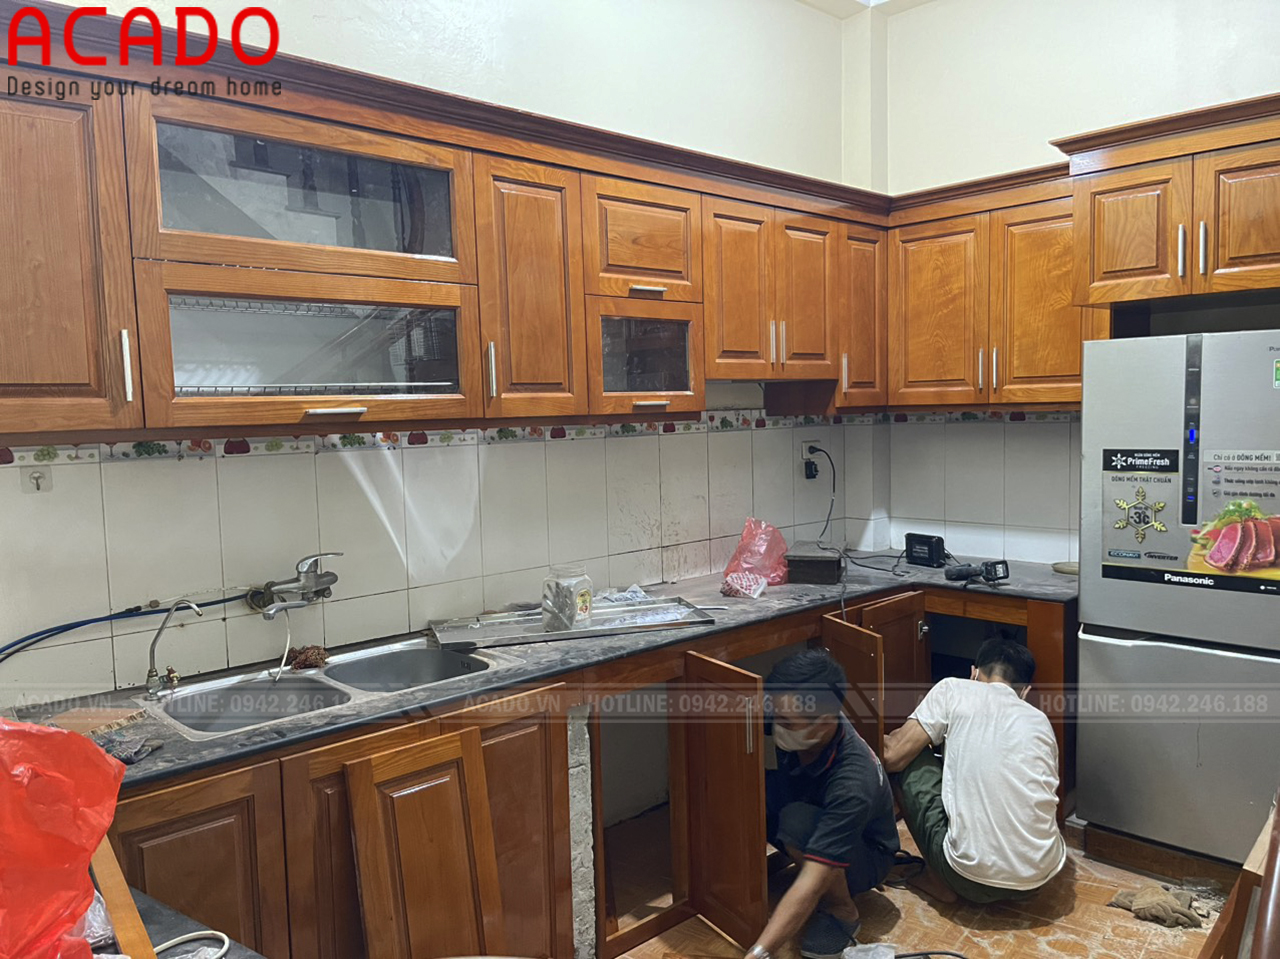 Hình ảnh đọi ngũ thi công ACADO đang lắp đặt tủ bếp cho gia đình anh Hiến